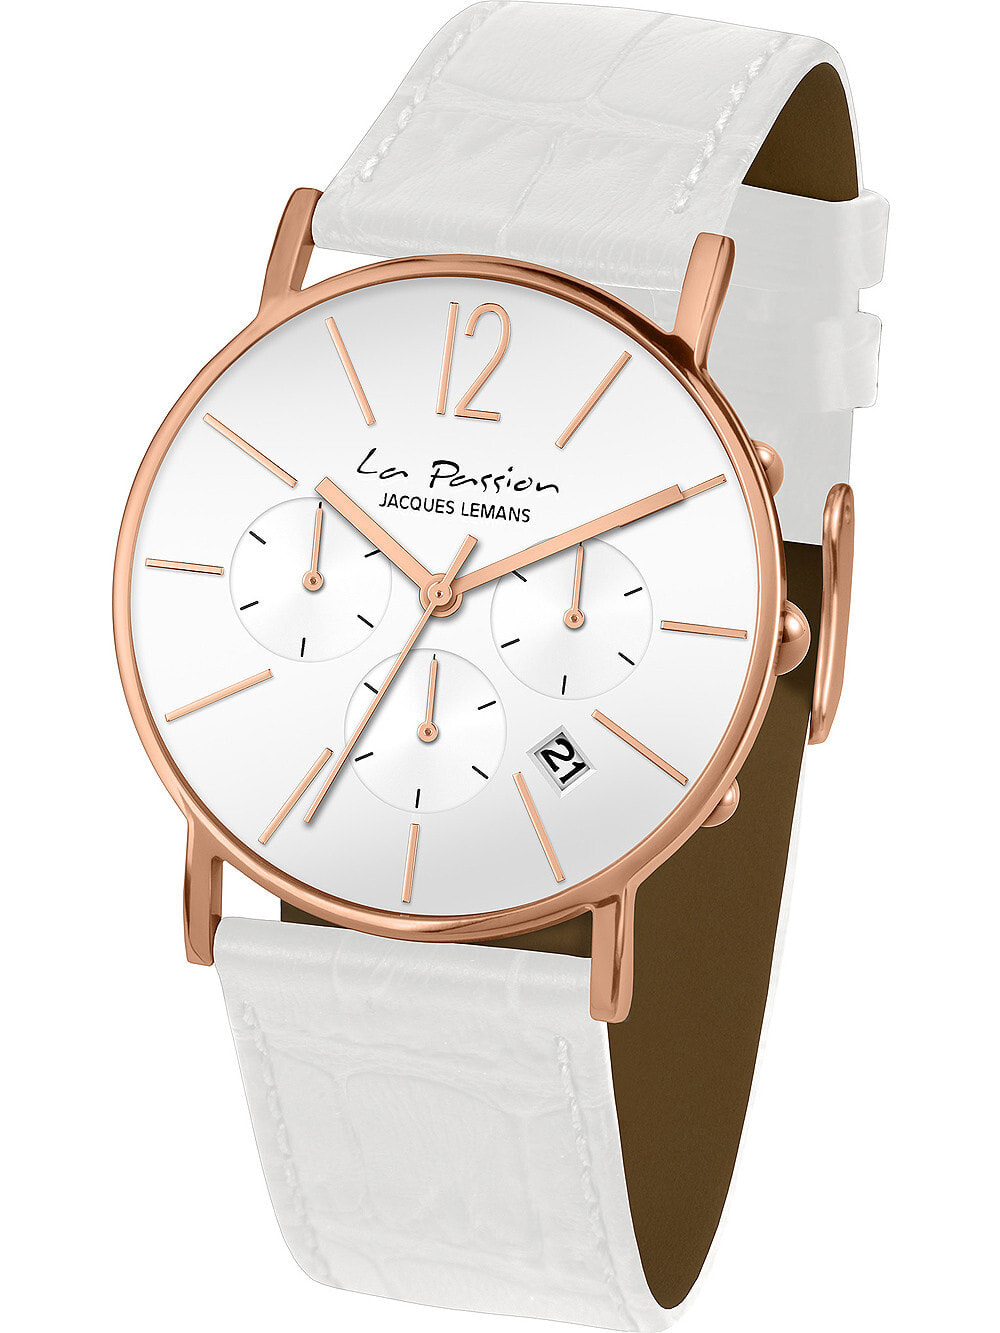 Женские наручные кварцевые часы Jacques Lemans кожаный ремешок, хронограф.